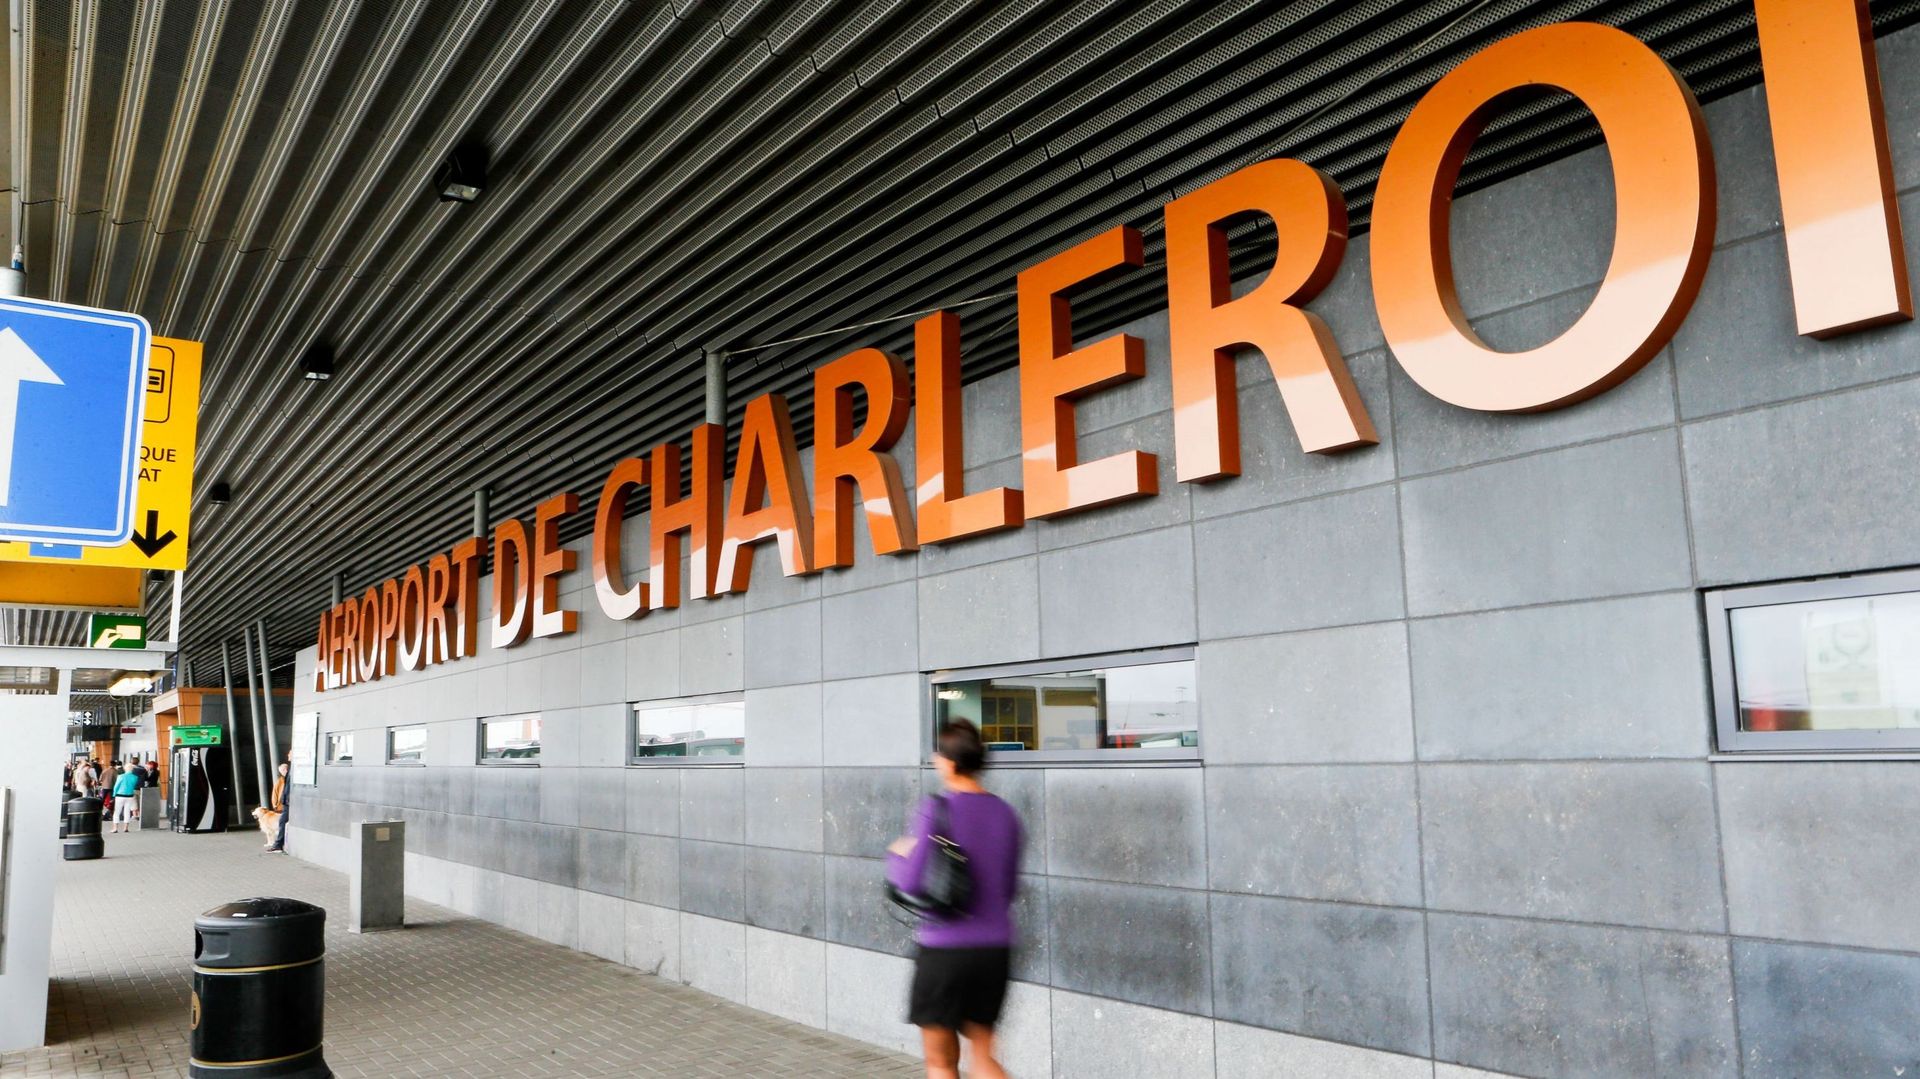 Coronavirus : reprise en douceur des activités à l'aéroport de Charleroi dès ce lundi